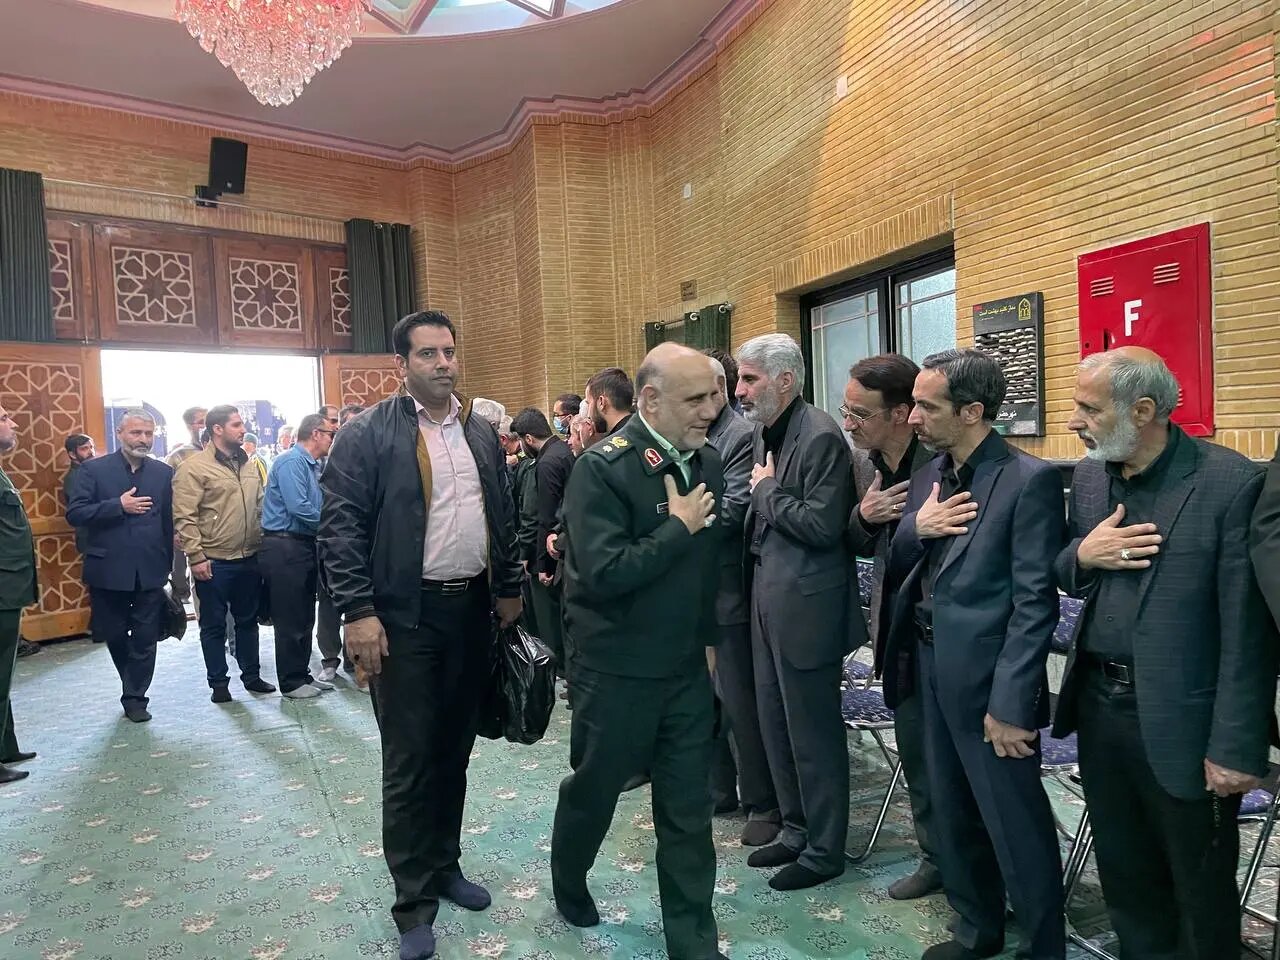 همنشینی معاون روحانی و مشاور عالی رهبر انقلاب در یک مراسم /سردار اشتری و ابوترابی فرد هم آمدند